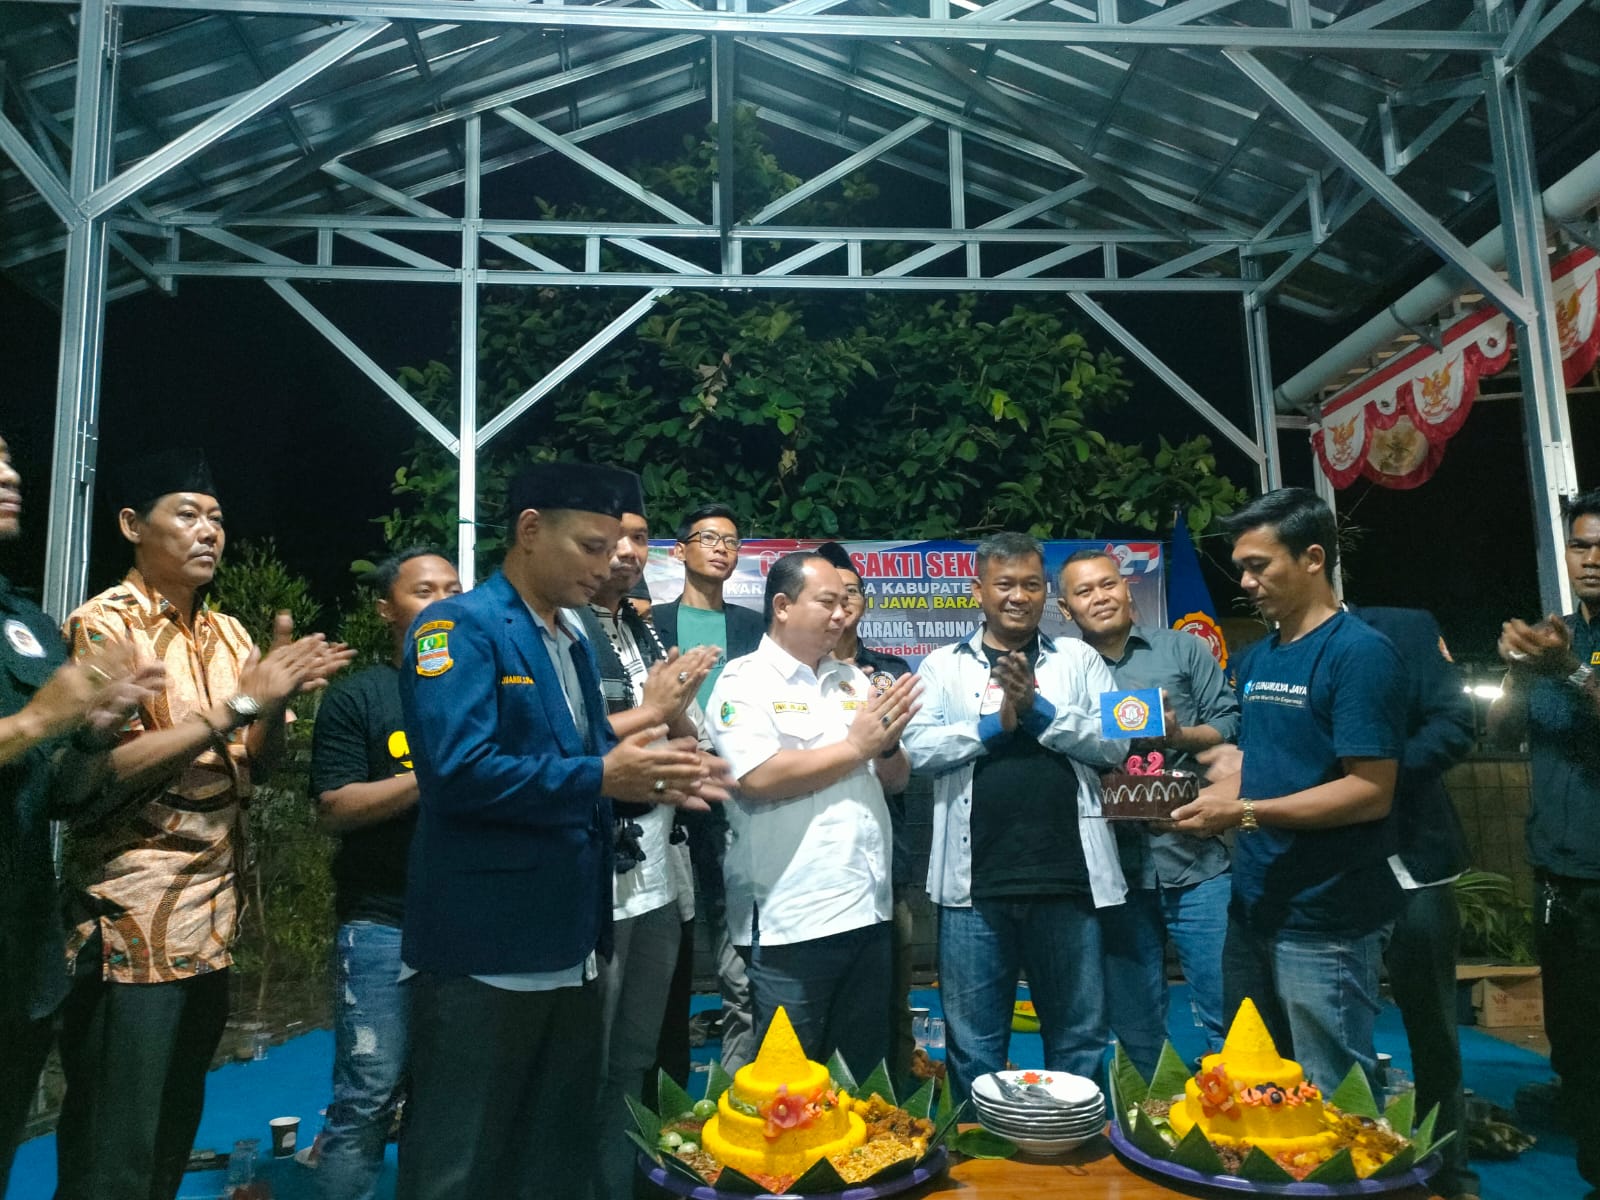 Hadiri Peringatan HUT Karang Taruna ke-62 di Kecamatan Setu, Ketua Jawa Barat Ajak Desa Gelorakan Garuda